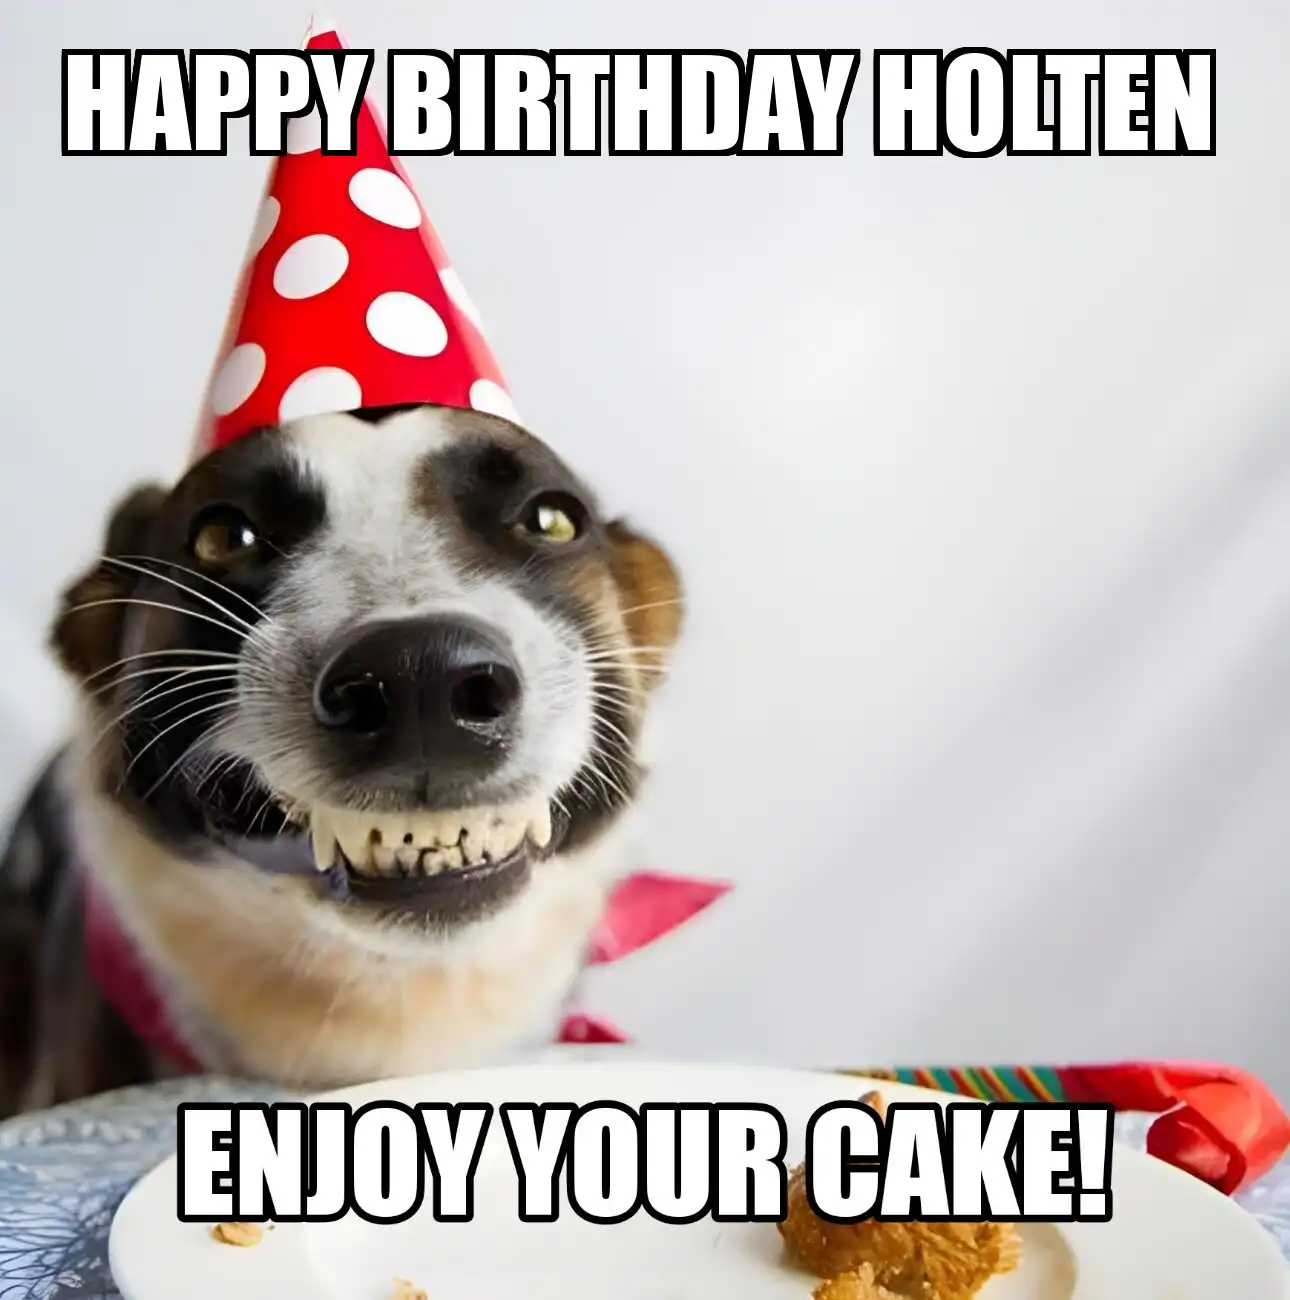 Happy Birthday Holten Enjoy Your Cake Dog Meme